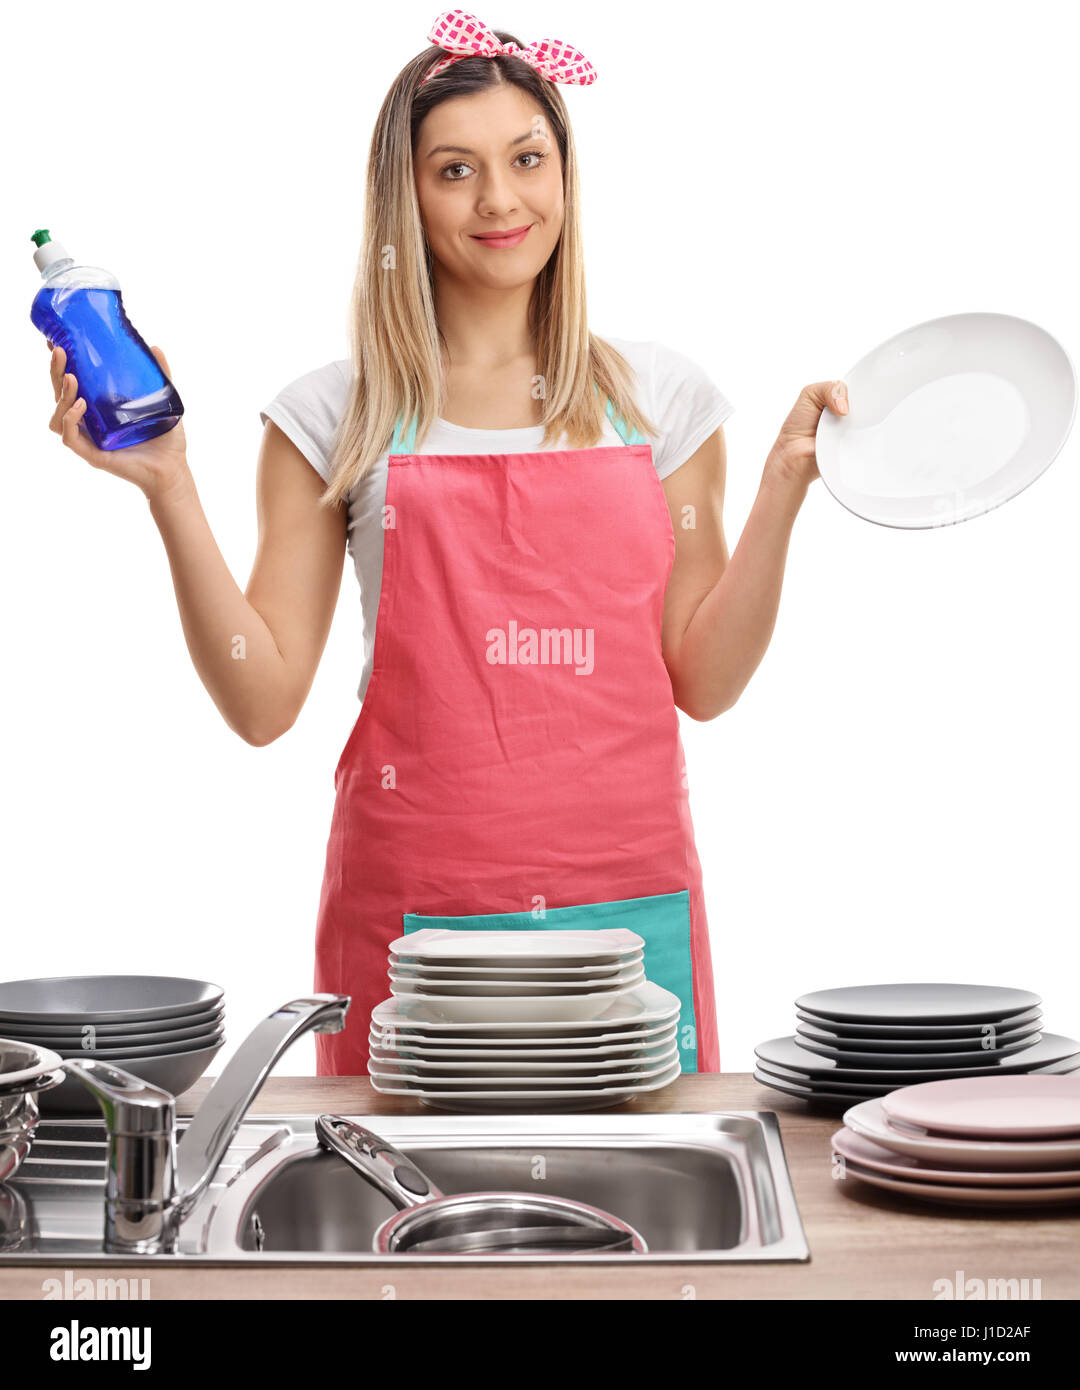 Junge Frau mit Schürze halten ein Reinigungsmittel und einen sauberen Teller isoliert auf weißem Hintergrund Stockfoto